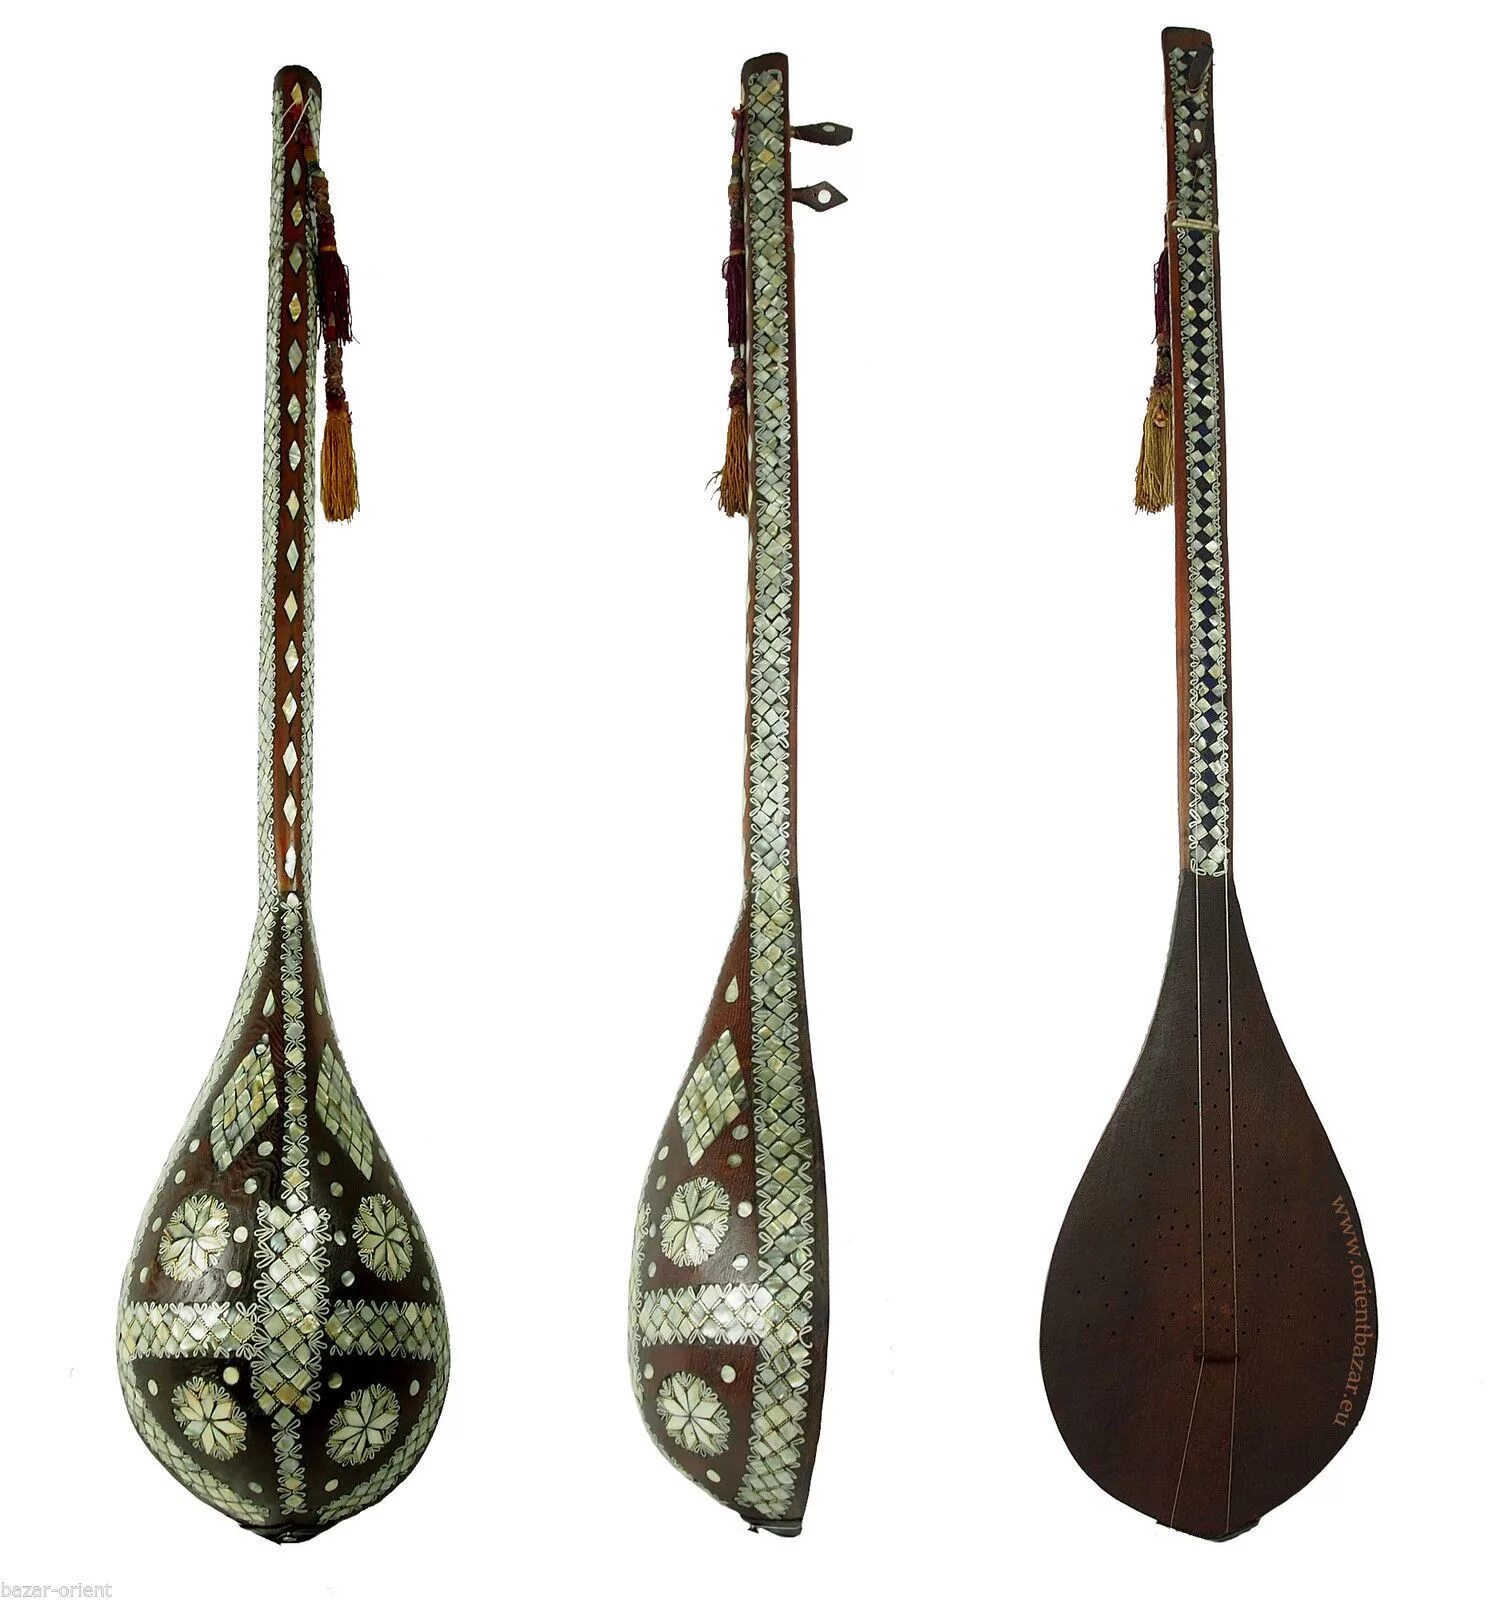 Туркменский дутар музыкальный инструмент. Узбекский инструмент дутар. Дутар и домбра. Карнай музыкальный инструмент Узбекистана.